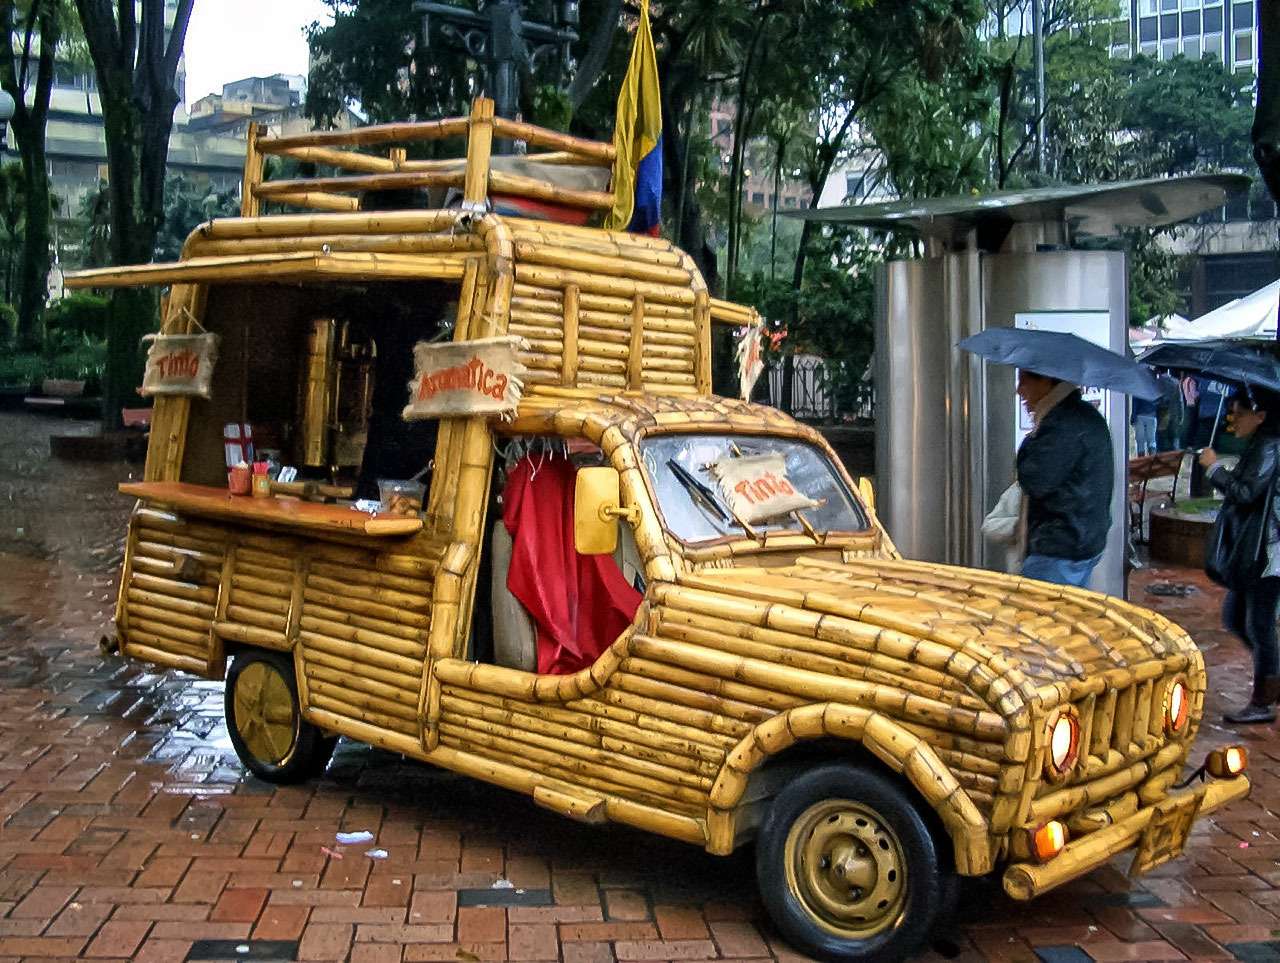 Бамбуковая машина колумбийца Хосе Маурицио Пардо